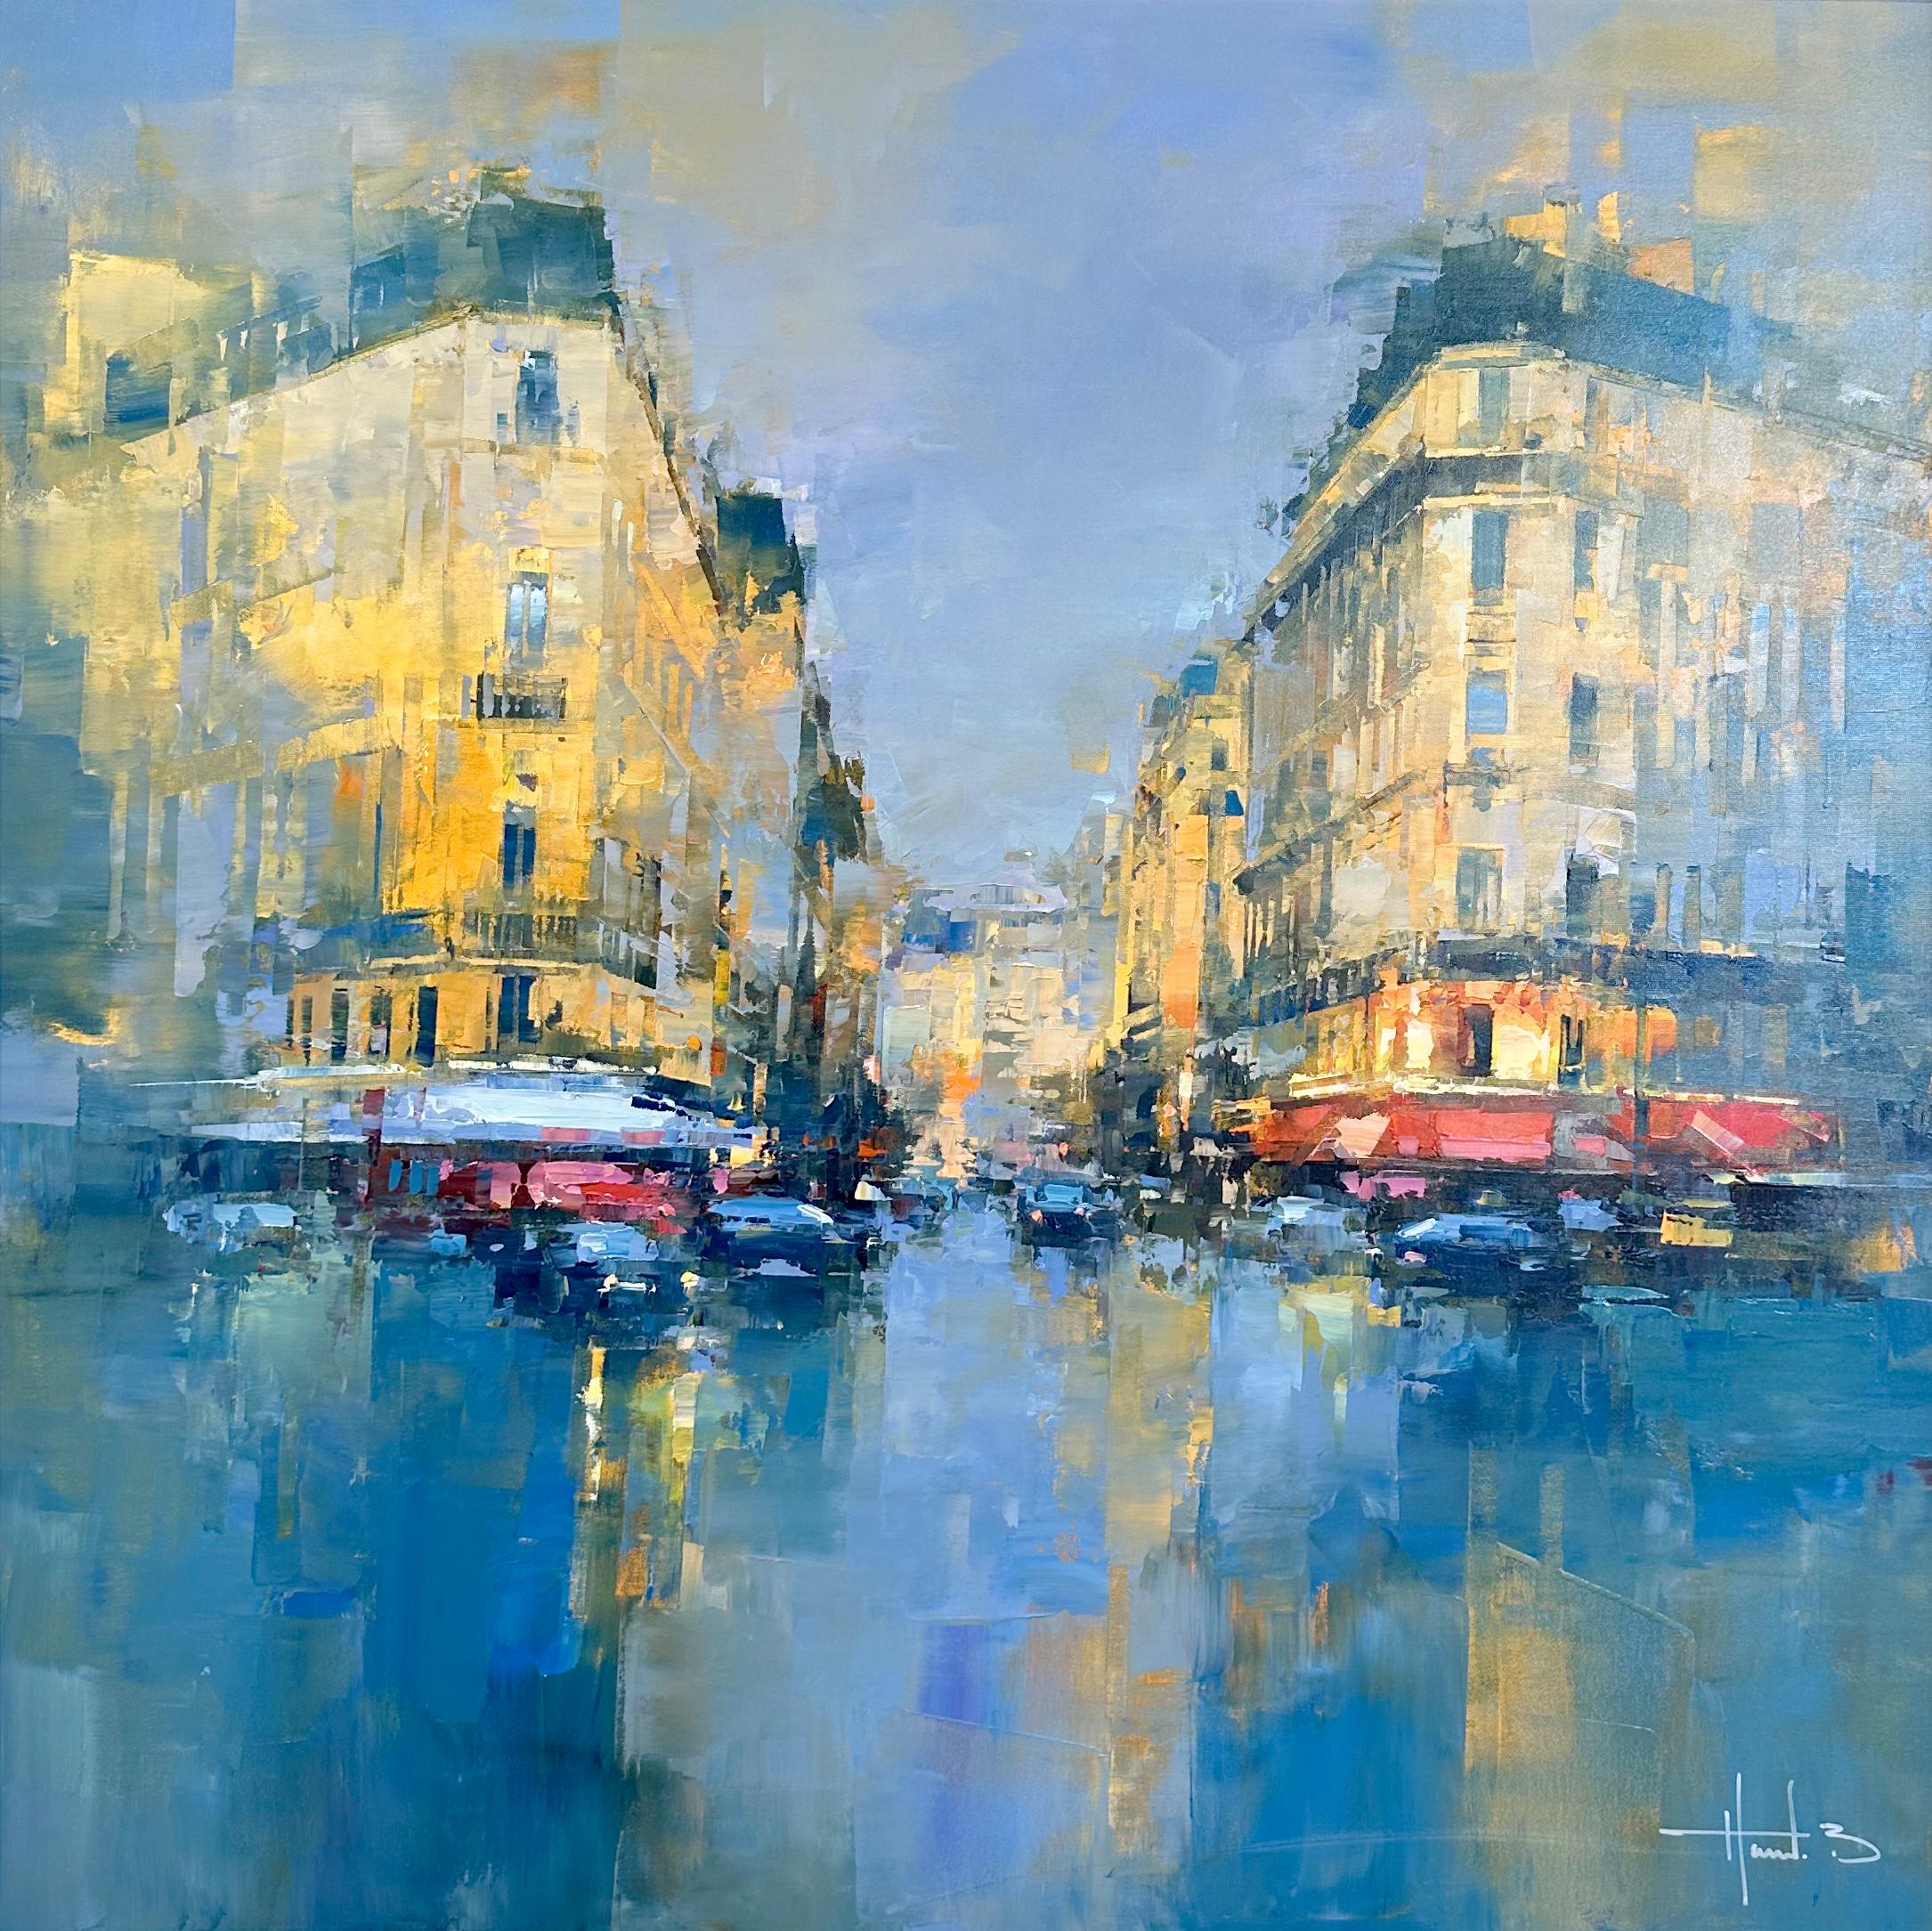 https://a.1stdibscdn.com/havard-benoit-paintings-havard-benoit-downtown-paris-urban-city-landscape-oil-painting-on-canvas-for-sale/a_14622/a_124338021699112869825/Downtown_Paris_master.jpg